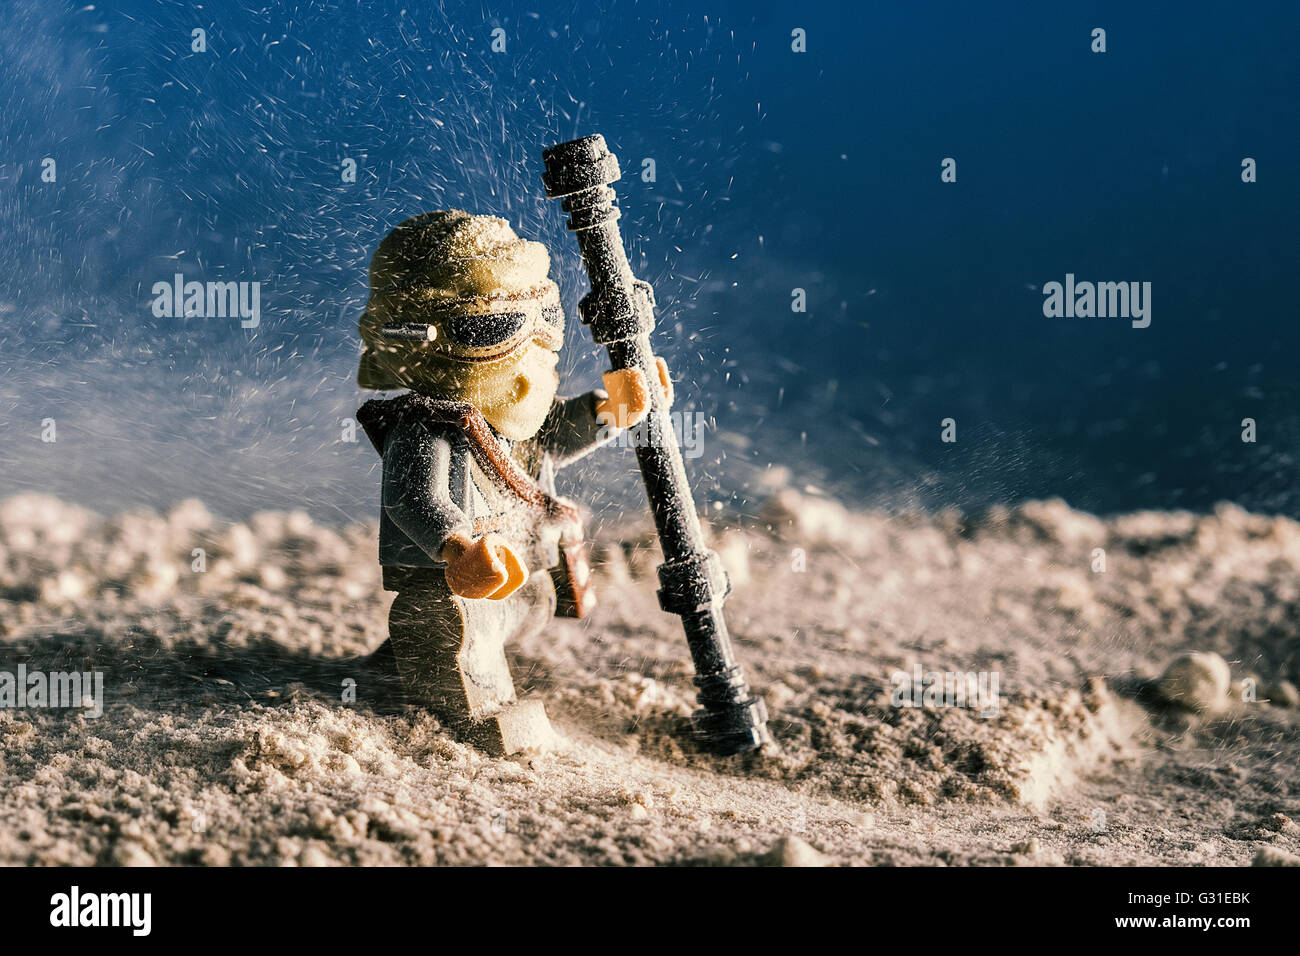 Une Figurine Lego Avec Une Arme à Feu Et Le Mot w Dessus.